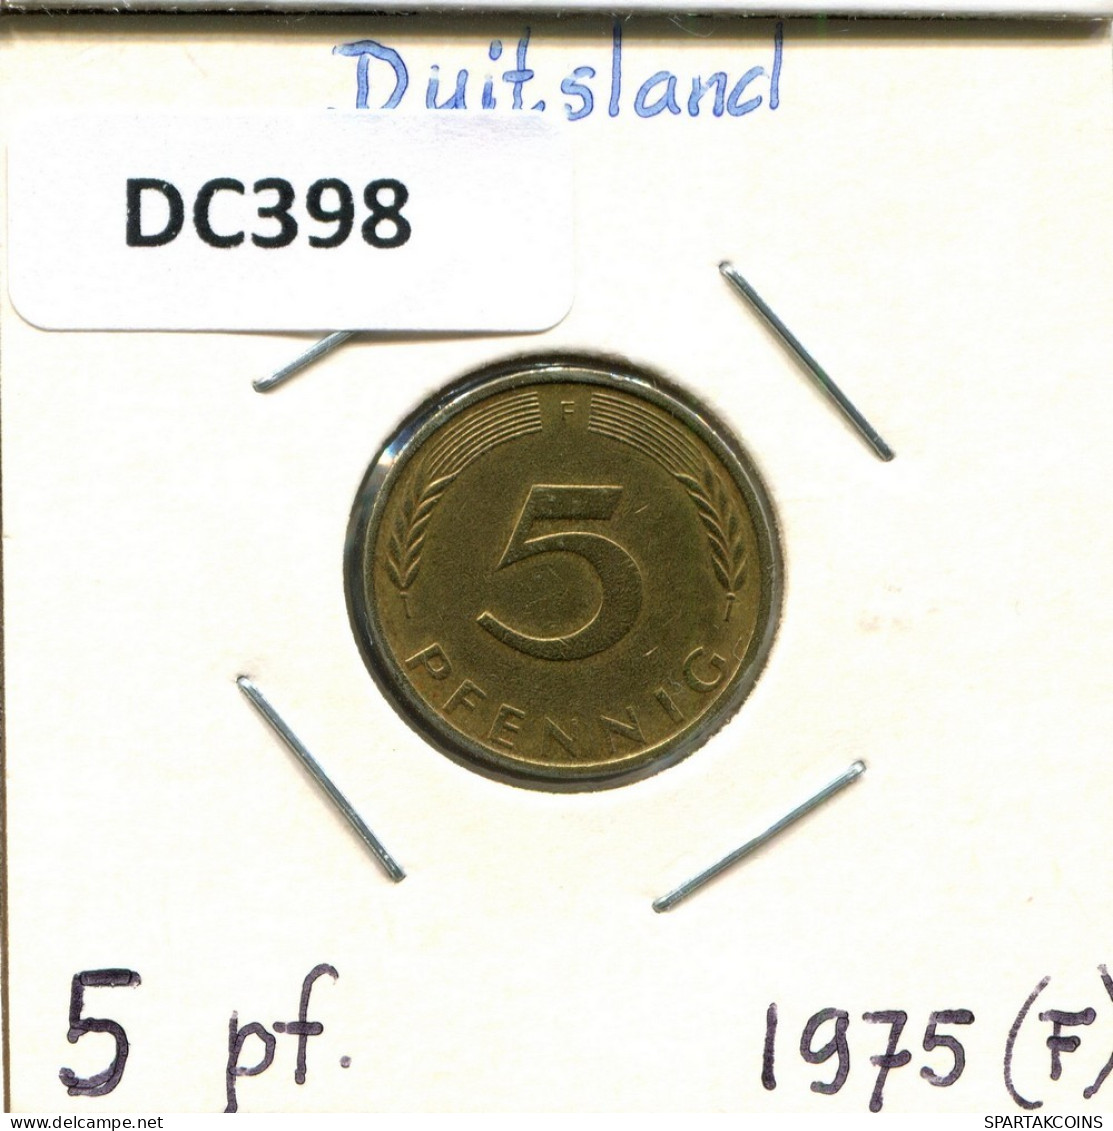 5 PFENNIG 1975 F BRD ALEMANIA Moneda GERMANY #DC398.E.A - 5 Pfennig